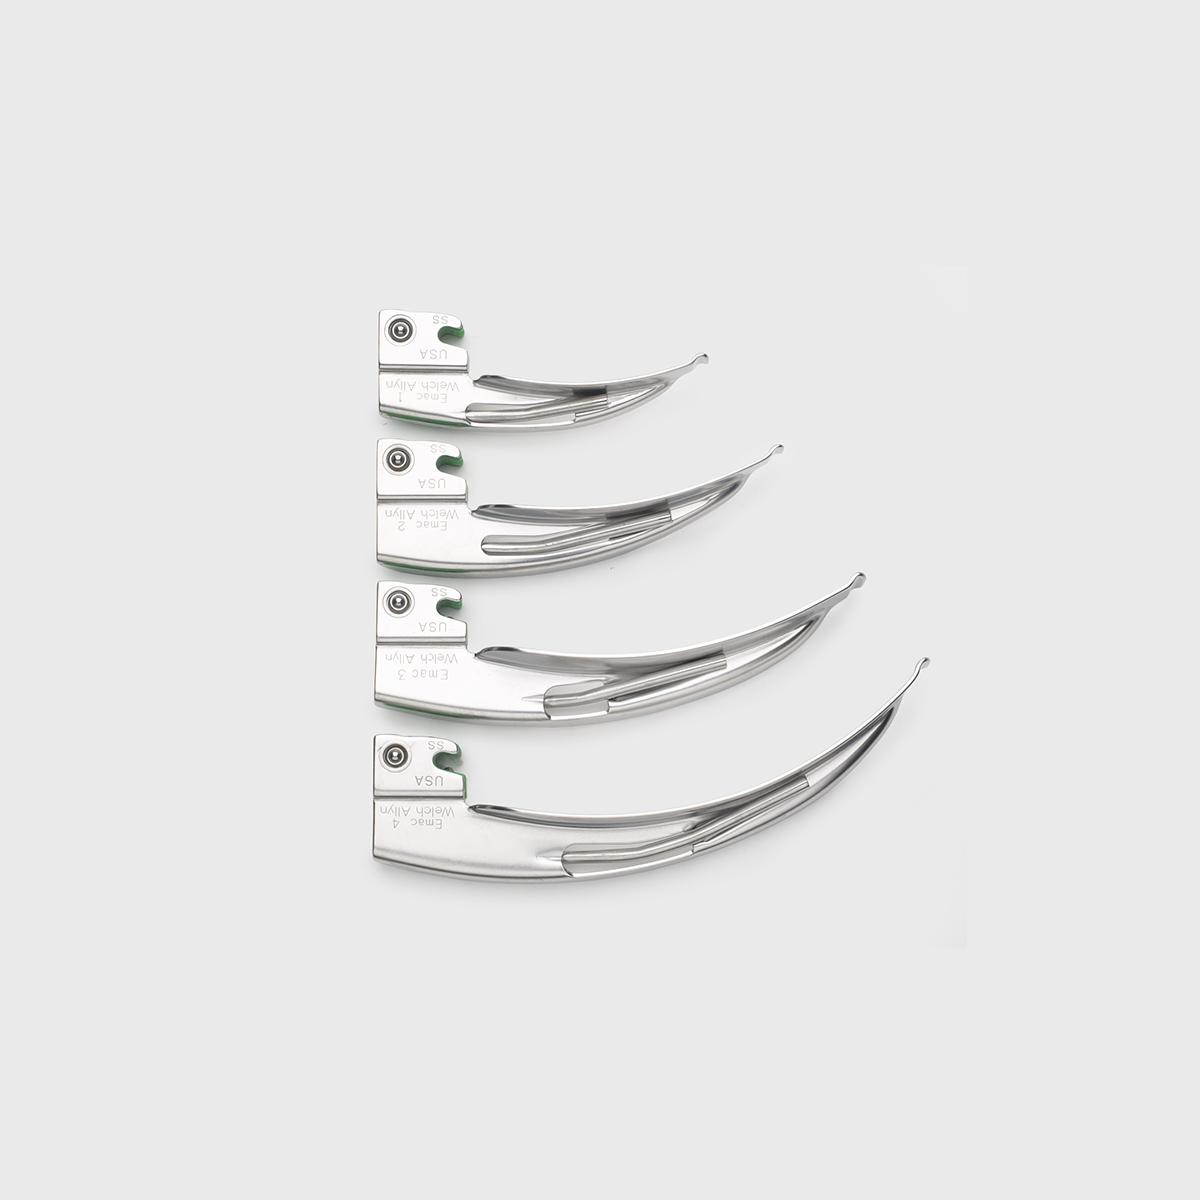 Quatro lâminas de vários tamanhos do sistema laringoscópio de fibra óptica Macintosh